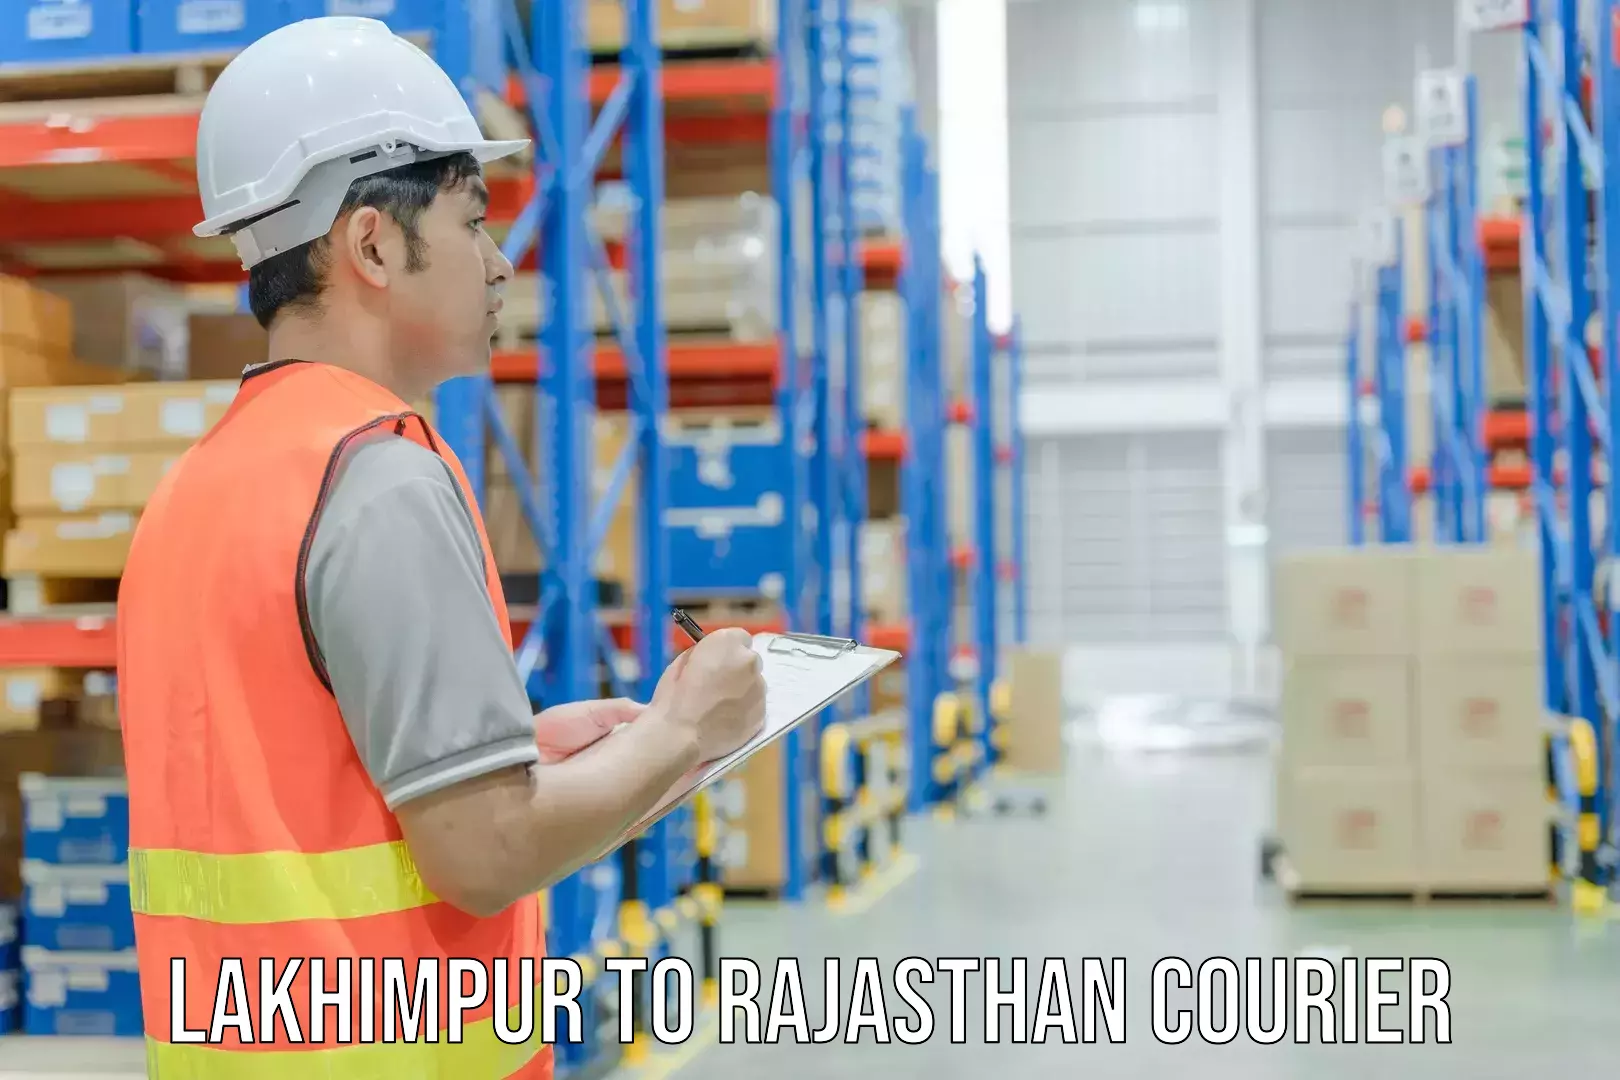 High-speed parcel service Lakhimpur to Kapasan